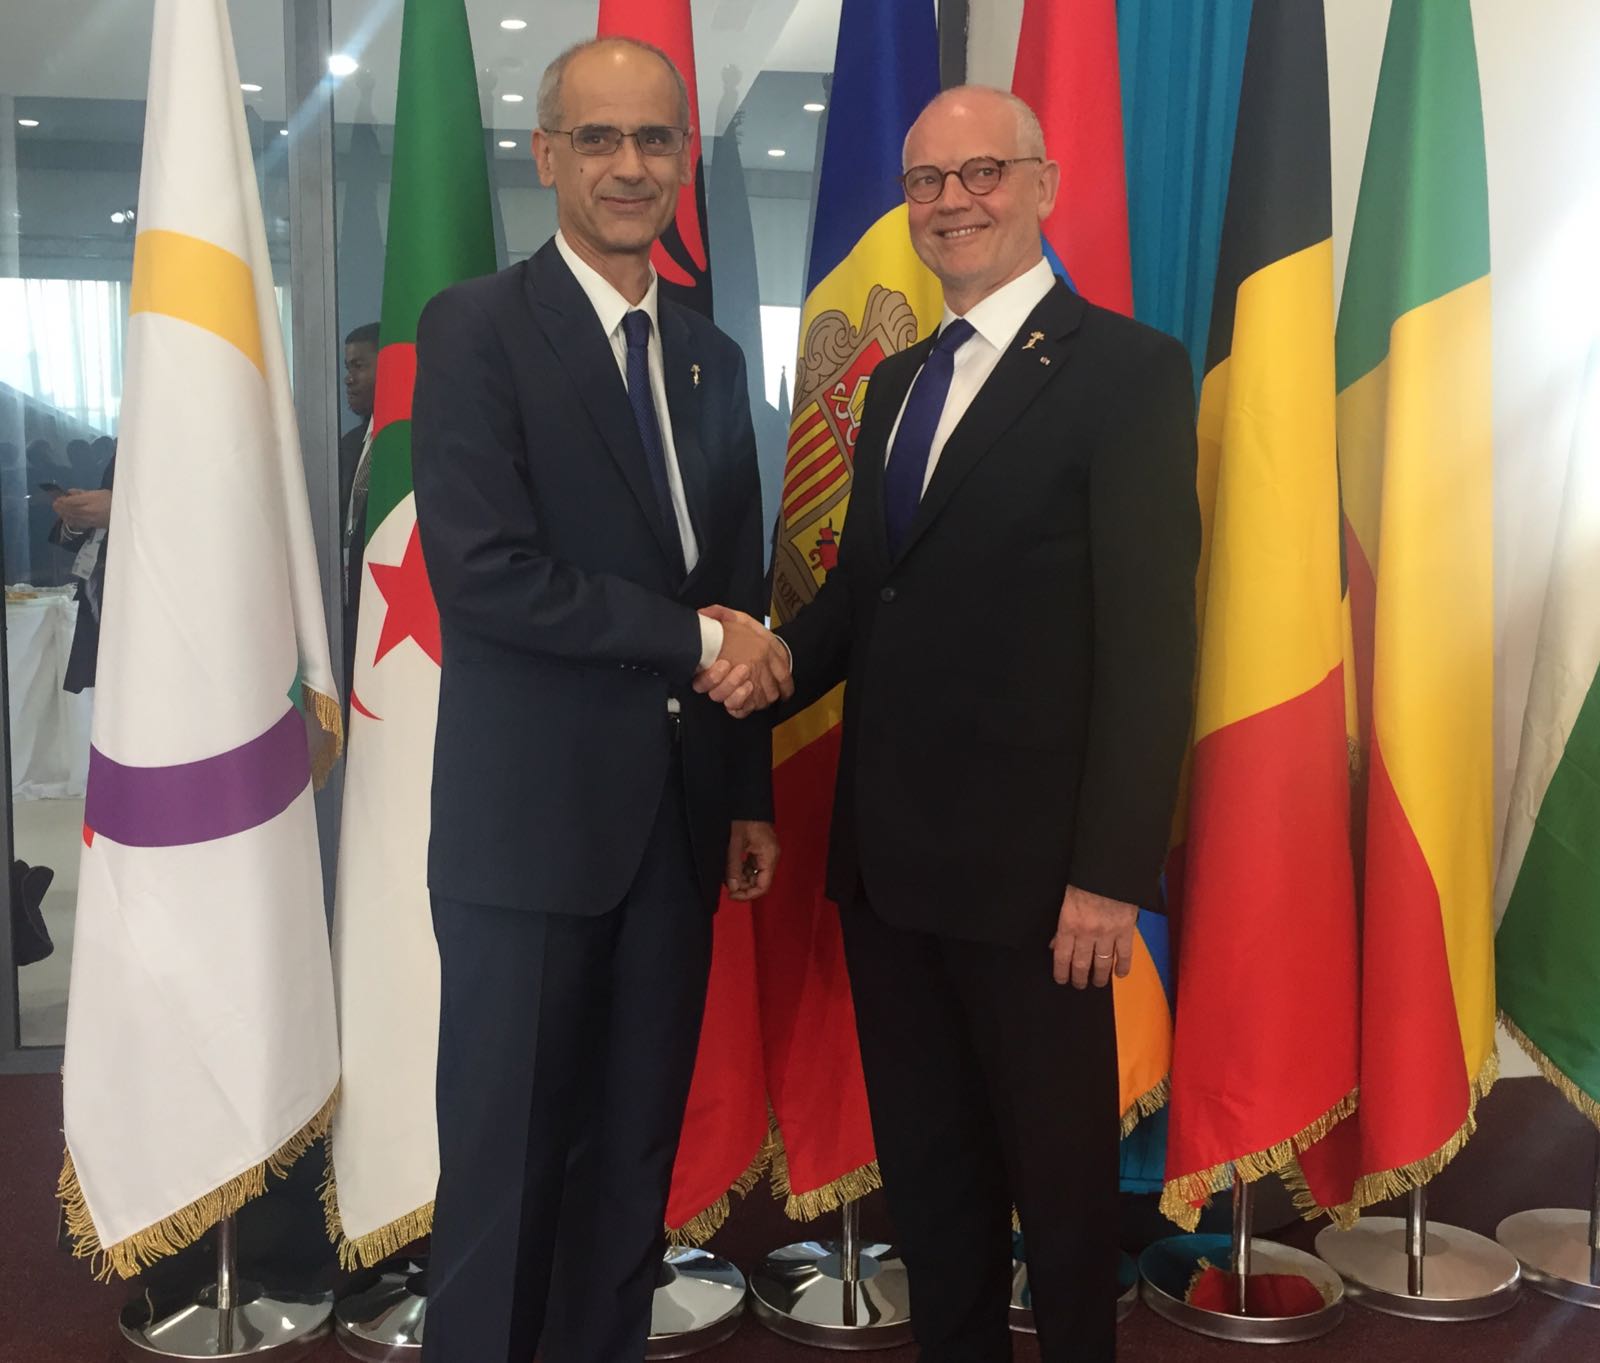 Martí vol acordar amb Mònaco i San Marino posicions conjuntes en la negociació amb la UE